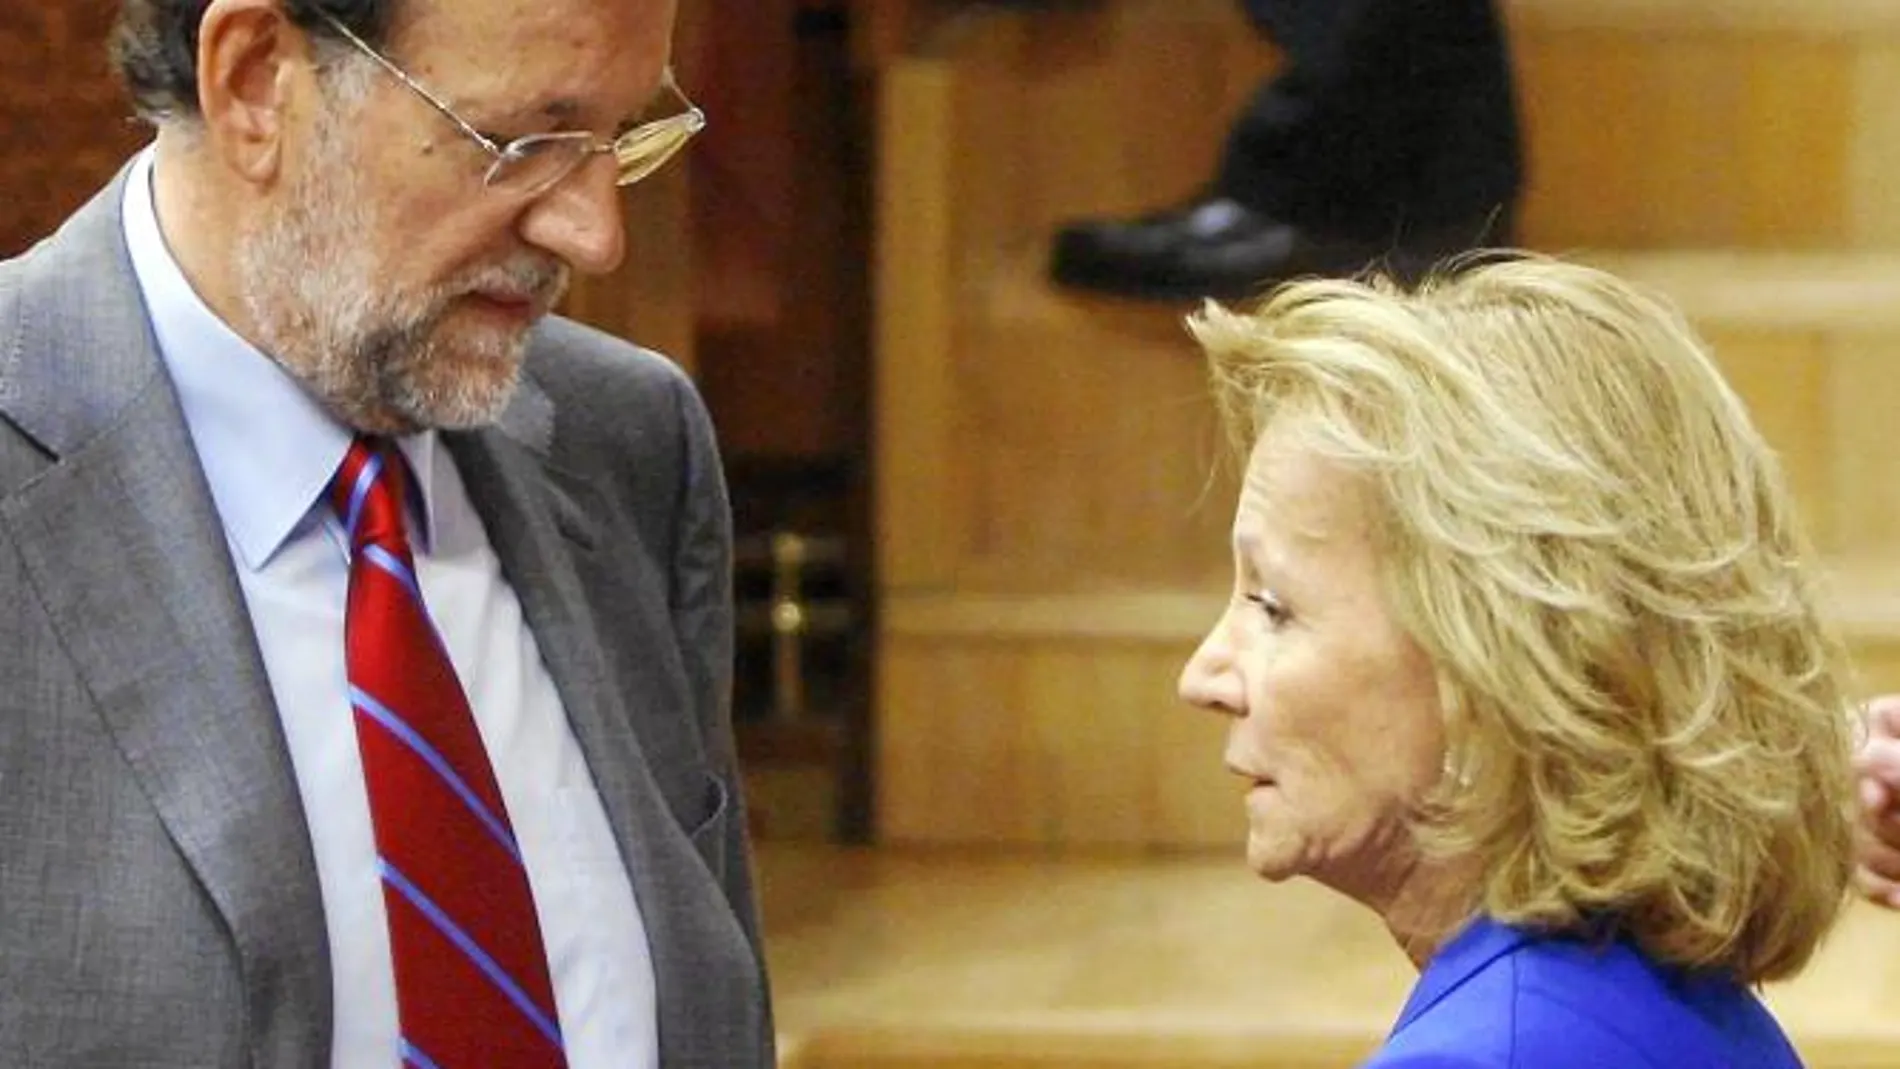 Rajoy, «muy contento»: Mariano Rajoy, que ayer mantuvo una intensa conversación con la vicepresidenta Elena Salgado, se mostró «muy contento» tras aprobarse la reforma.